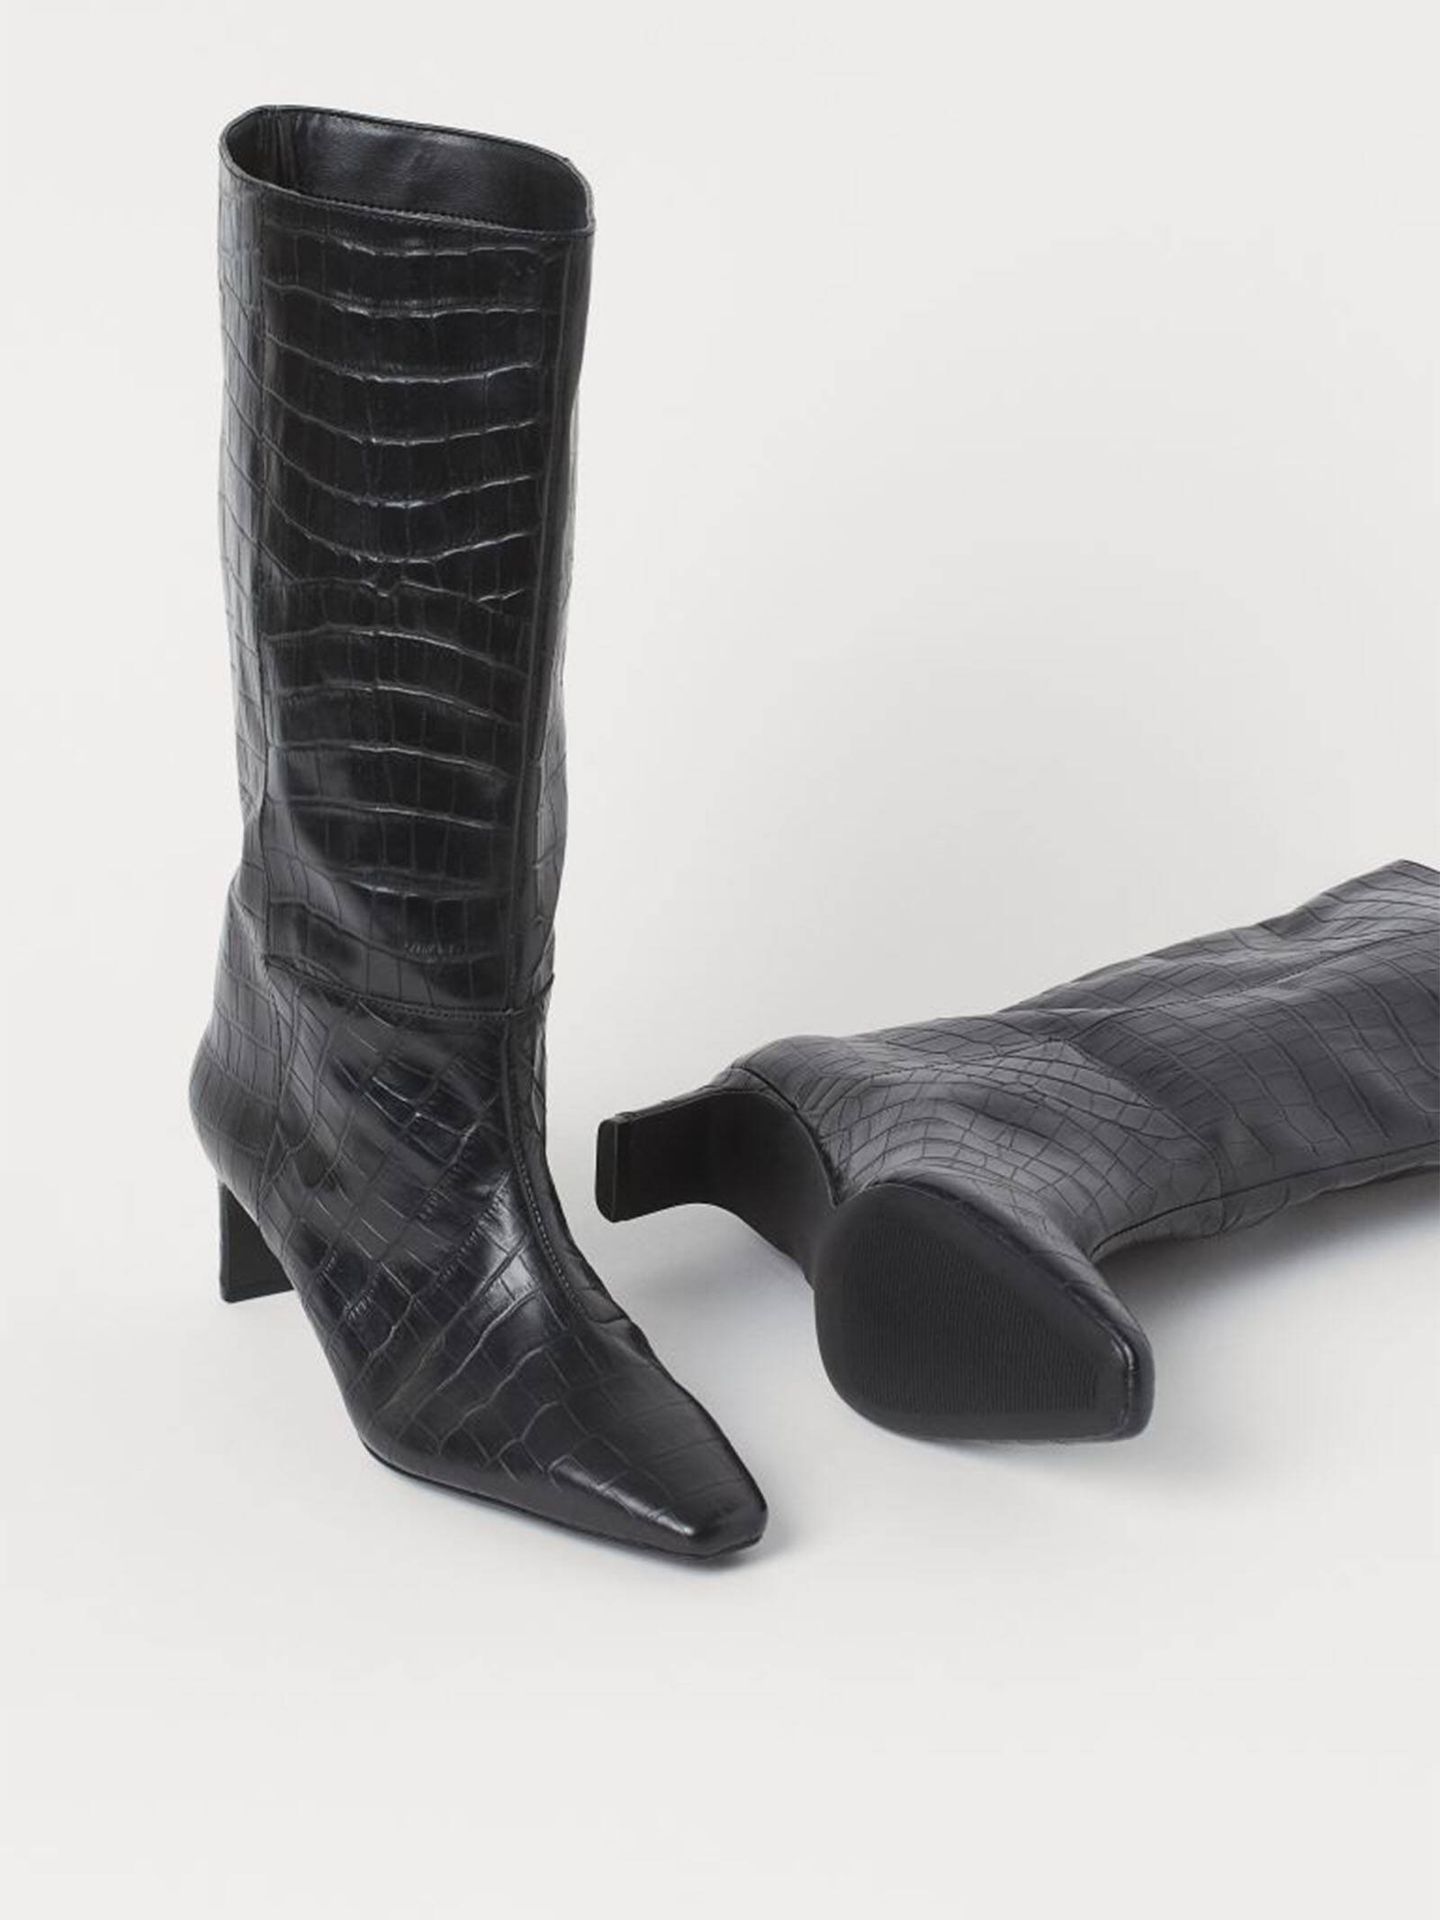 Las botas de HyM para combinar con el vestido negro. (HyM/Cortesía)